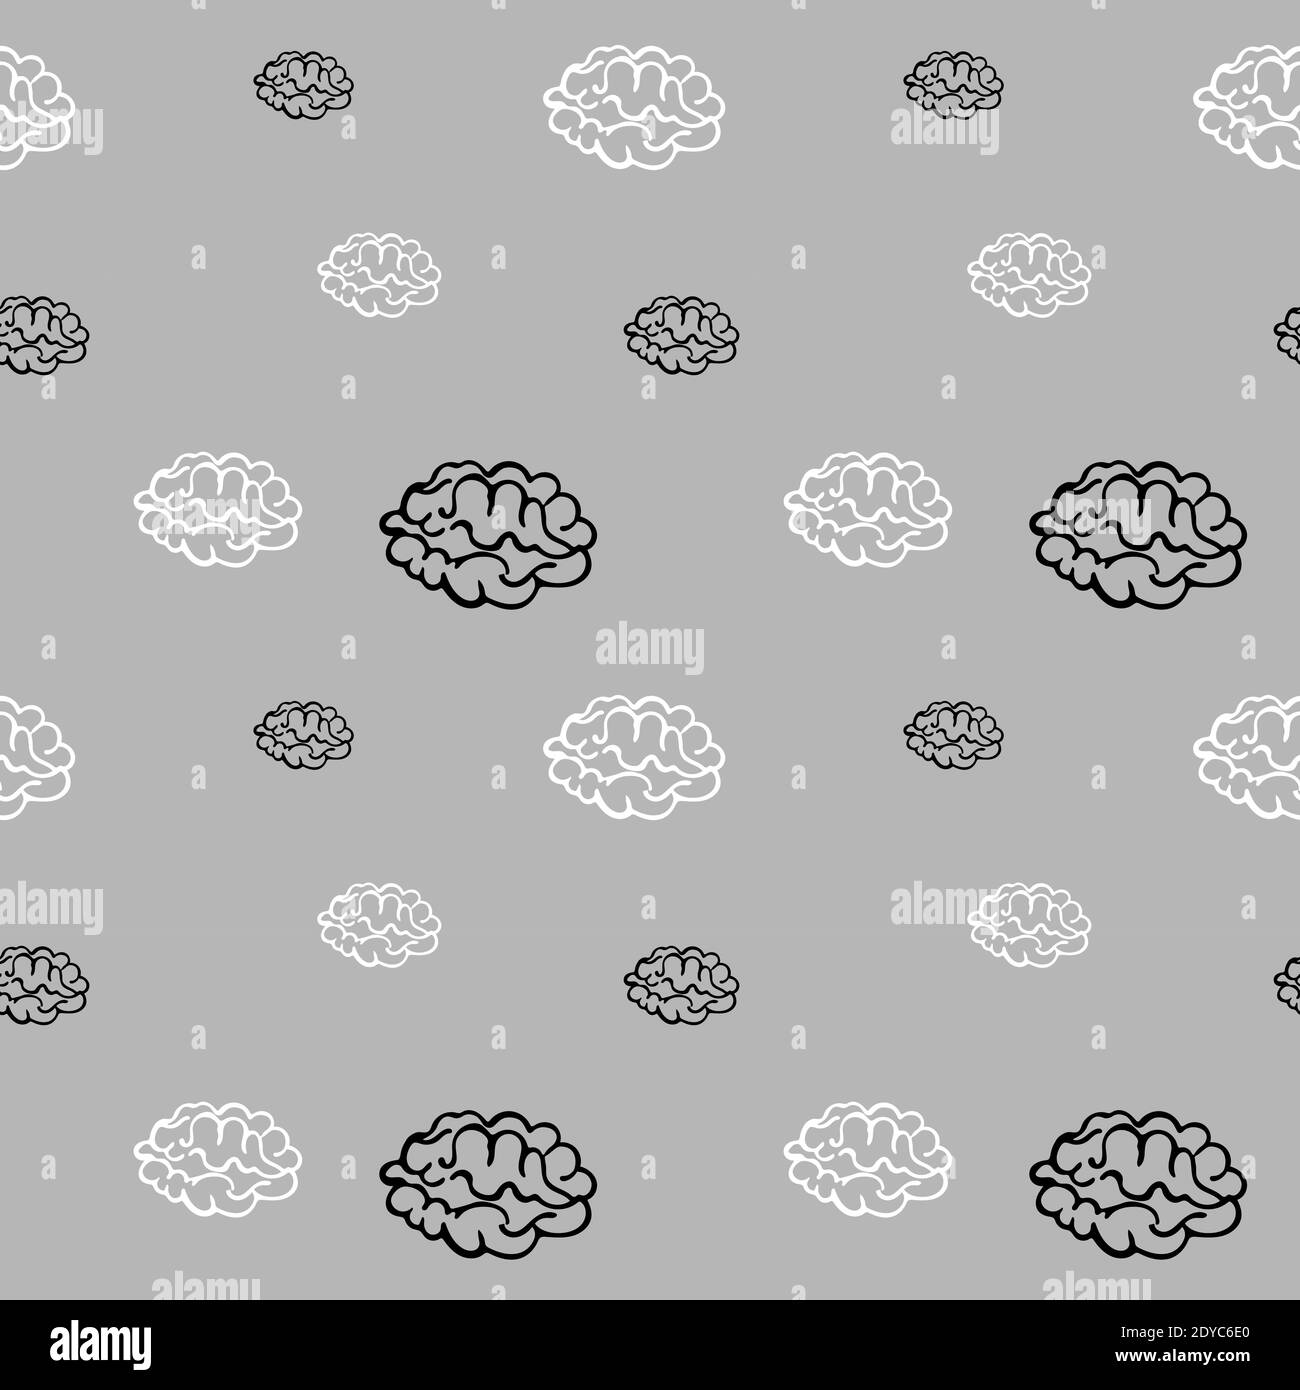 Schizzi bianchi e neri del cervello su sfondo grigio. Vettore. Illustrazione Vettoriale